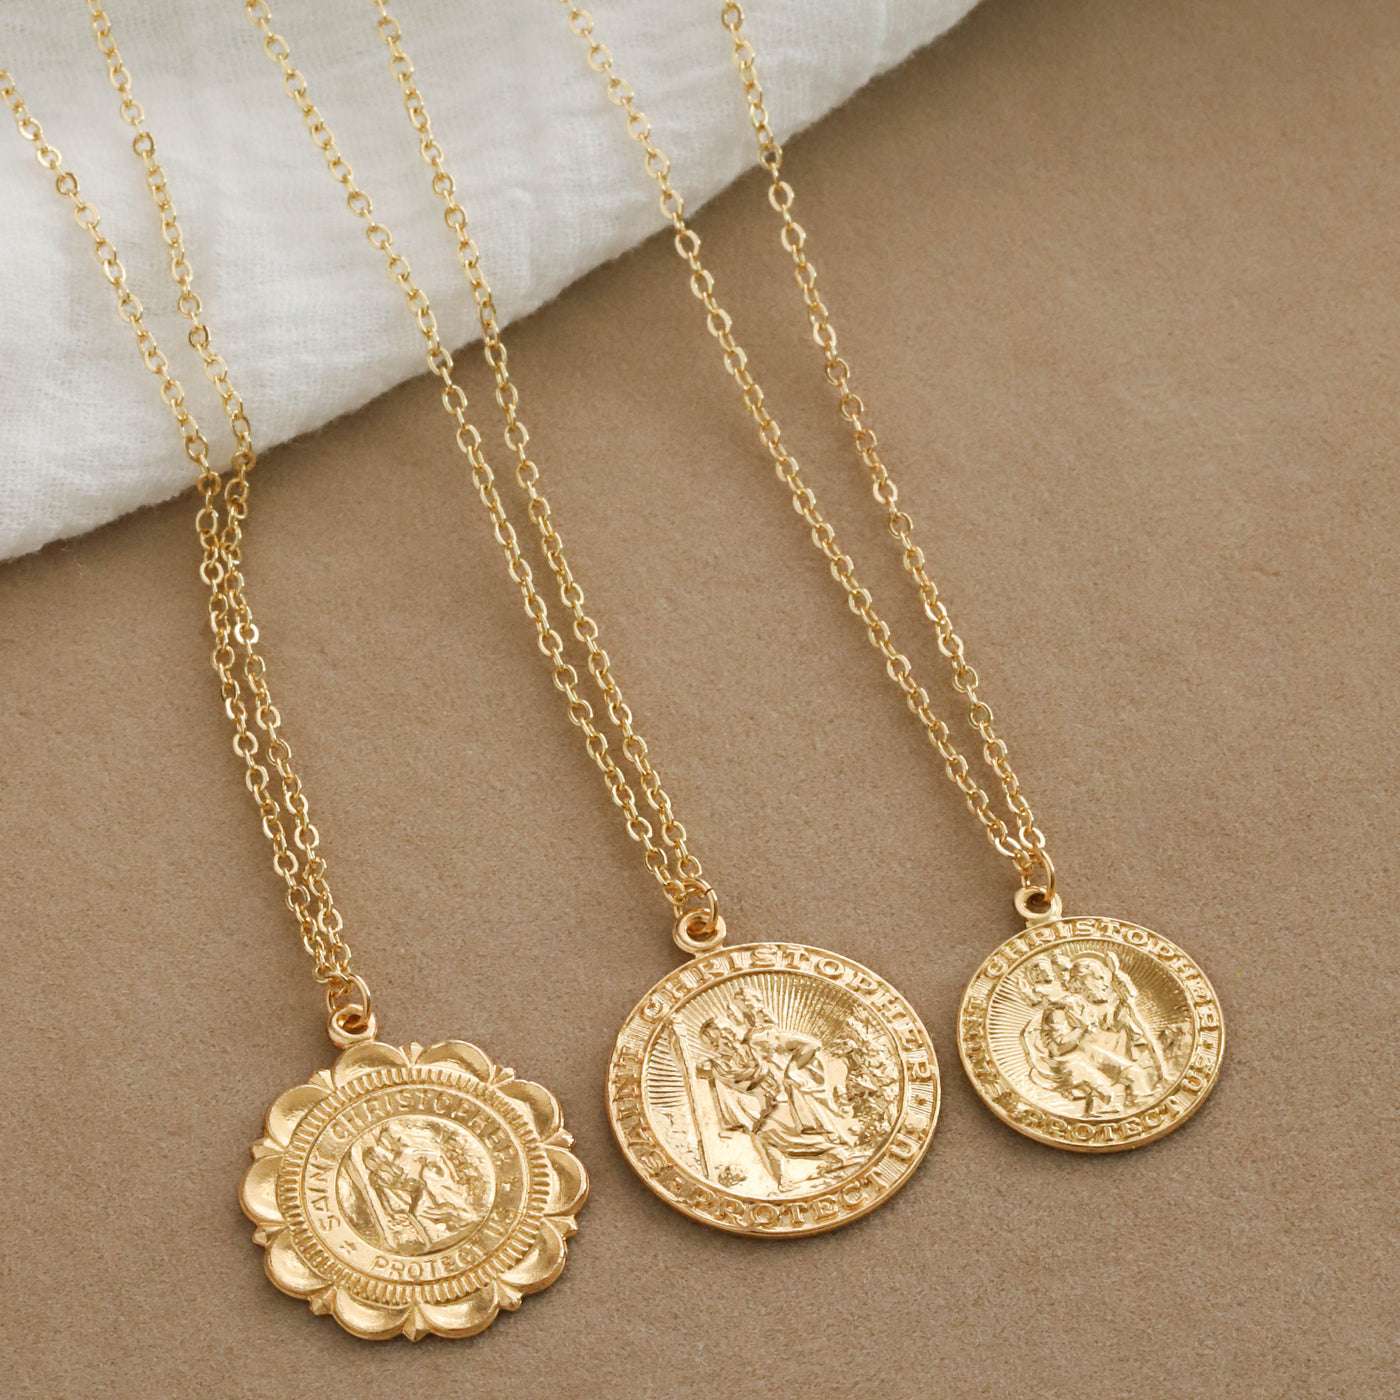 Gold medallion pendant necklaces